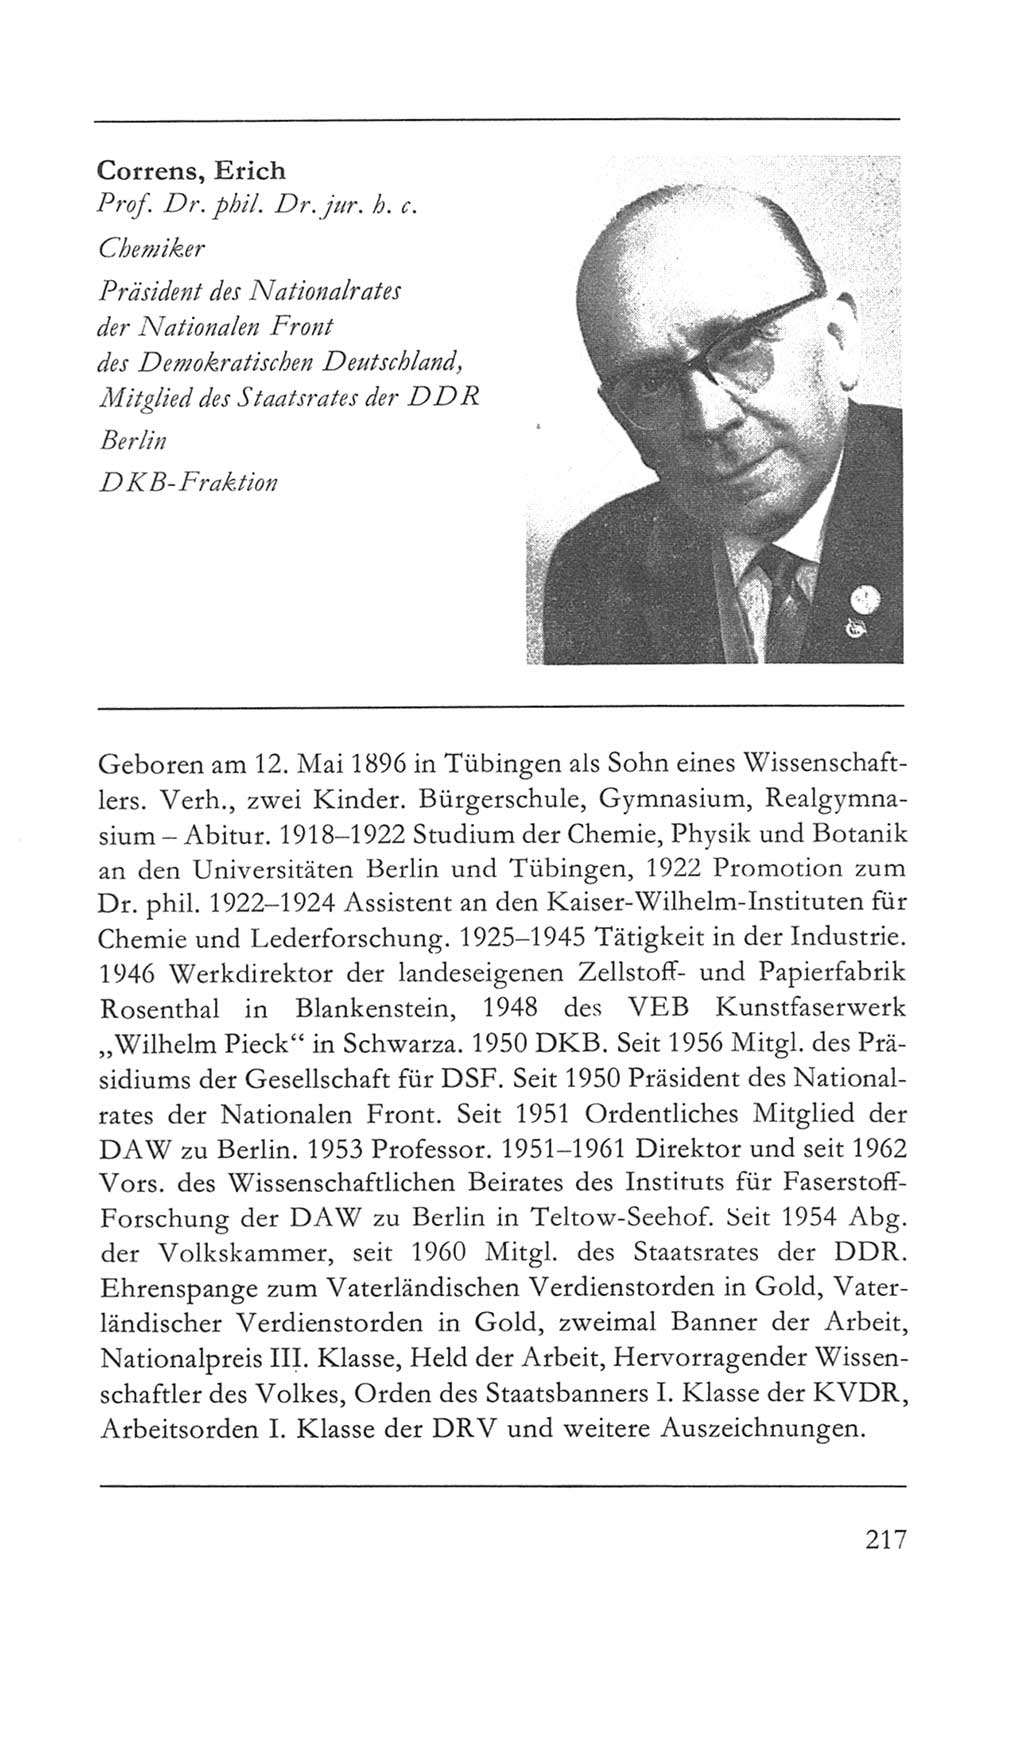 Volkskammer (VK) der Deutschen Demokratischen Republik (DDR) 5. Wahlperiode 1967-1971, Seite 217 (VK. DDR 5. WP. 1967-1971, S. 217)